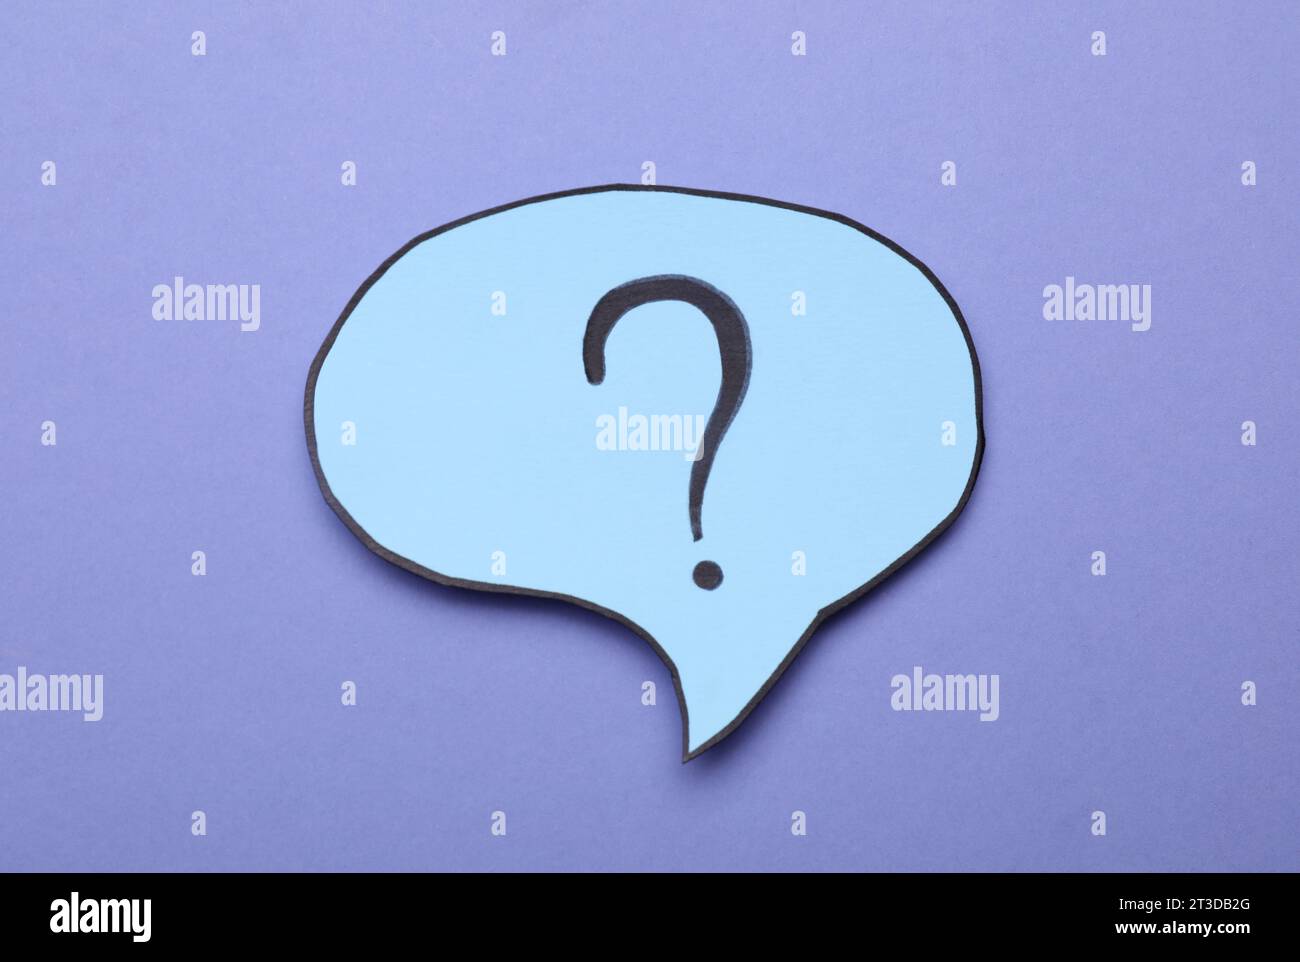 Sprechblase aus Papier mit Fragezeichen auf violettem Hintergrund, Draufsicht Stockfoto